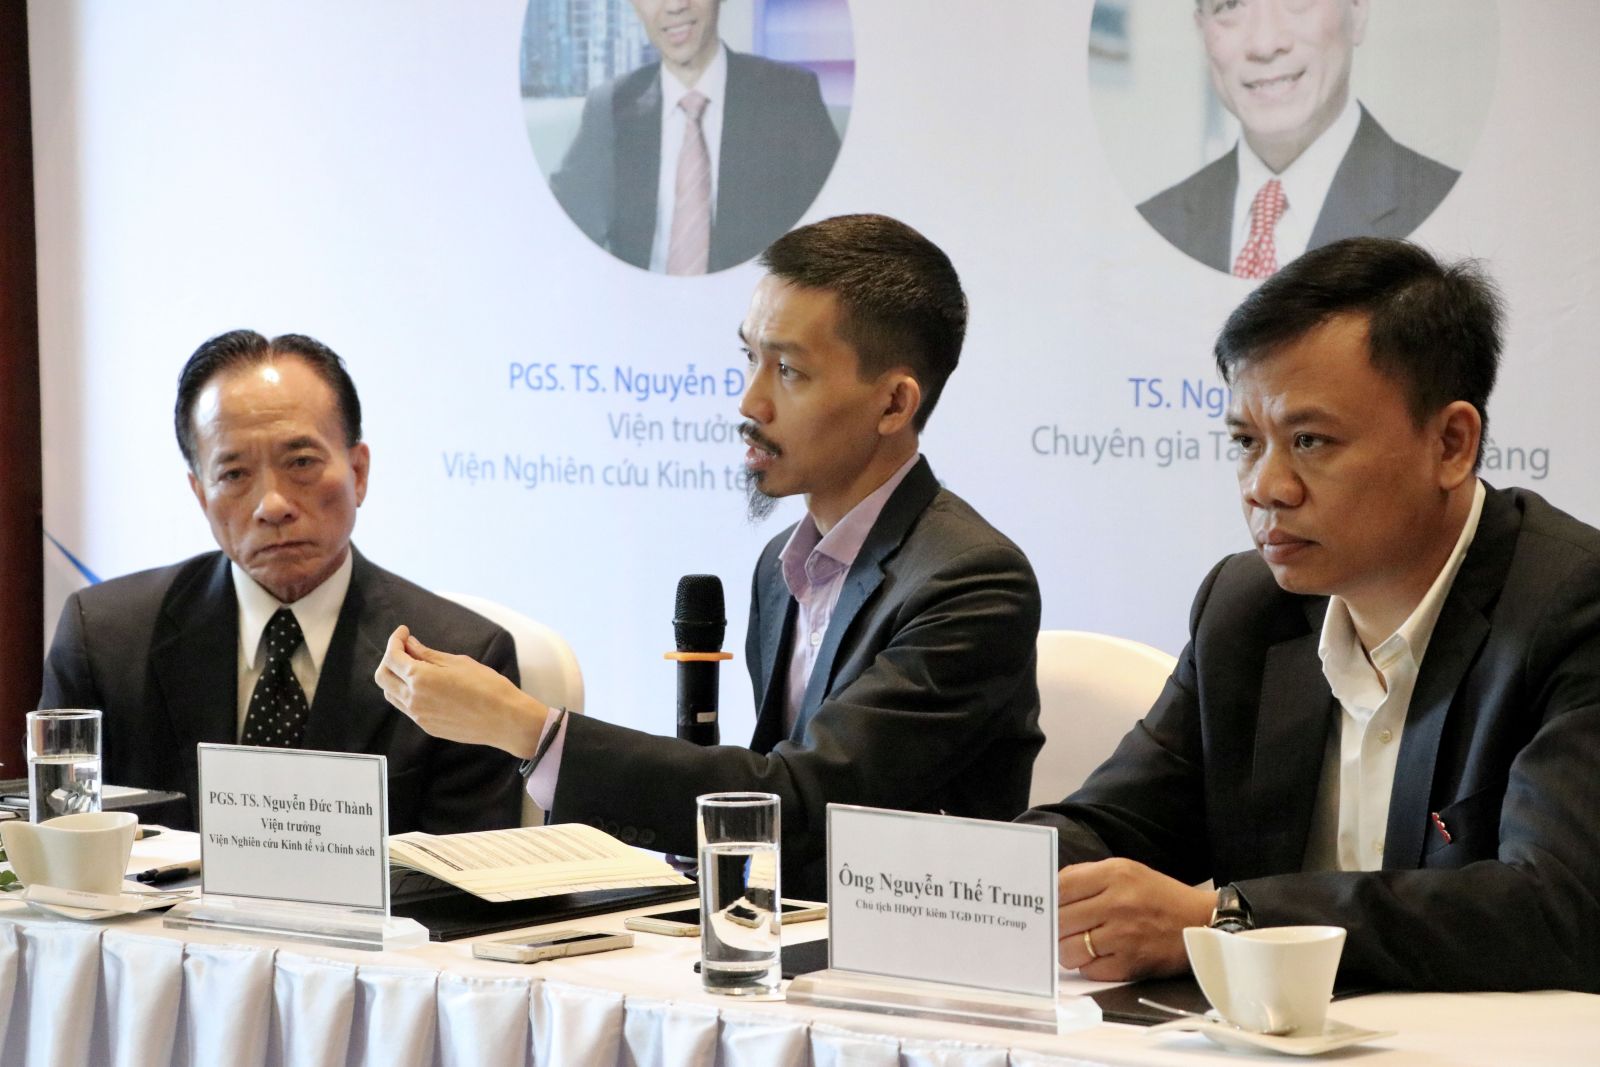 TS. Nguyễn Trí Hiếu, PGS. TS. Nguyễn Đức Thành và ông Nguyễn Thế Trung (từ trái sang phải) trong phiên thảo luận.